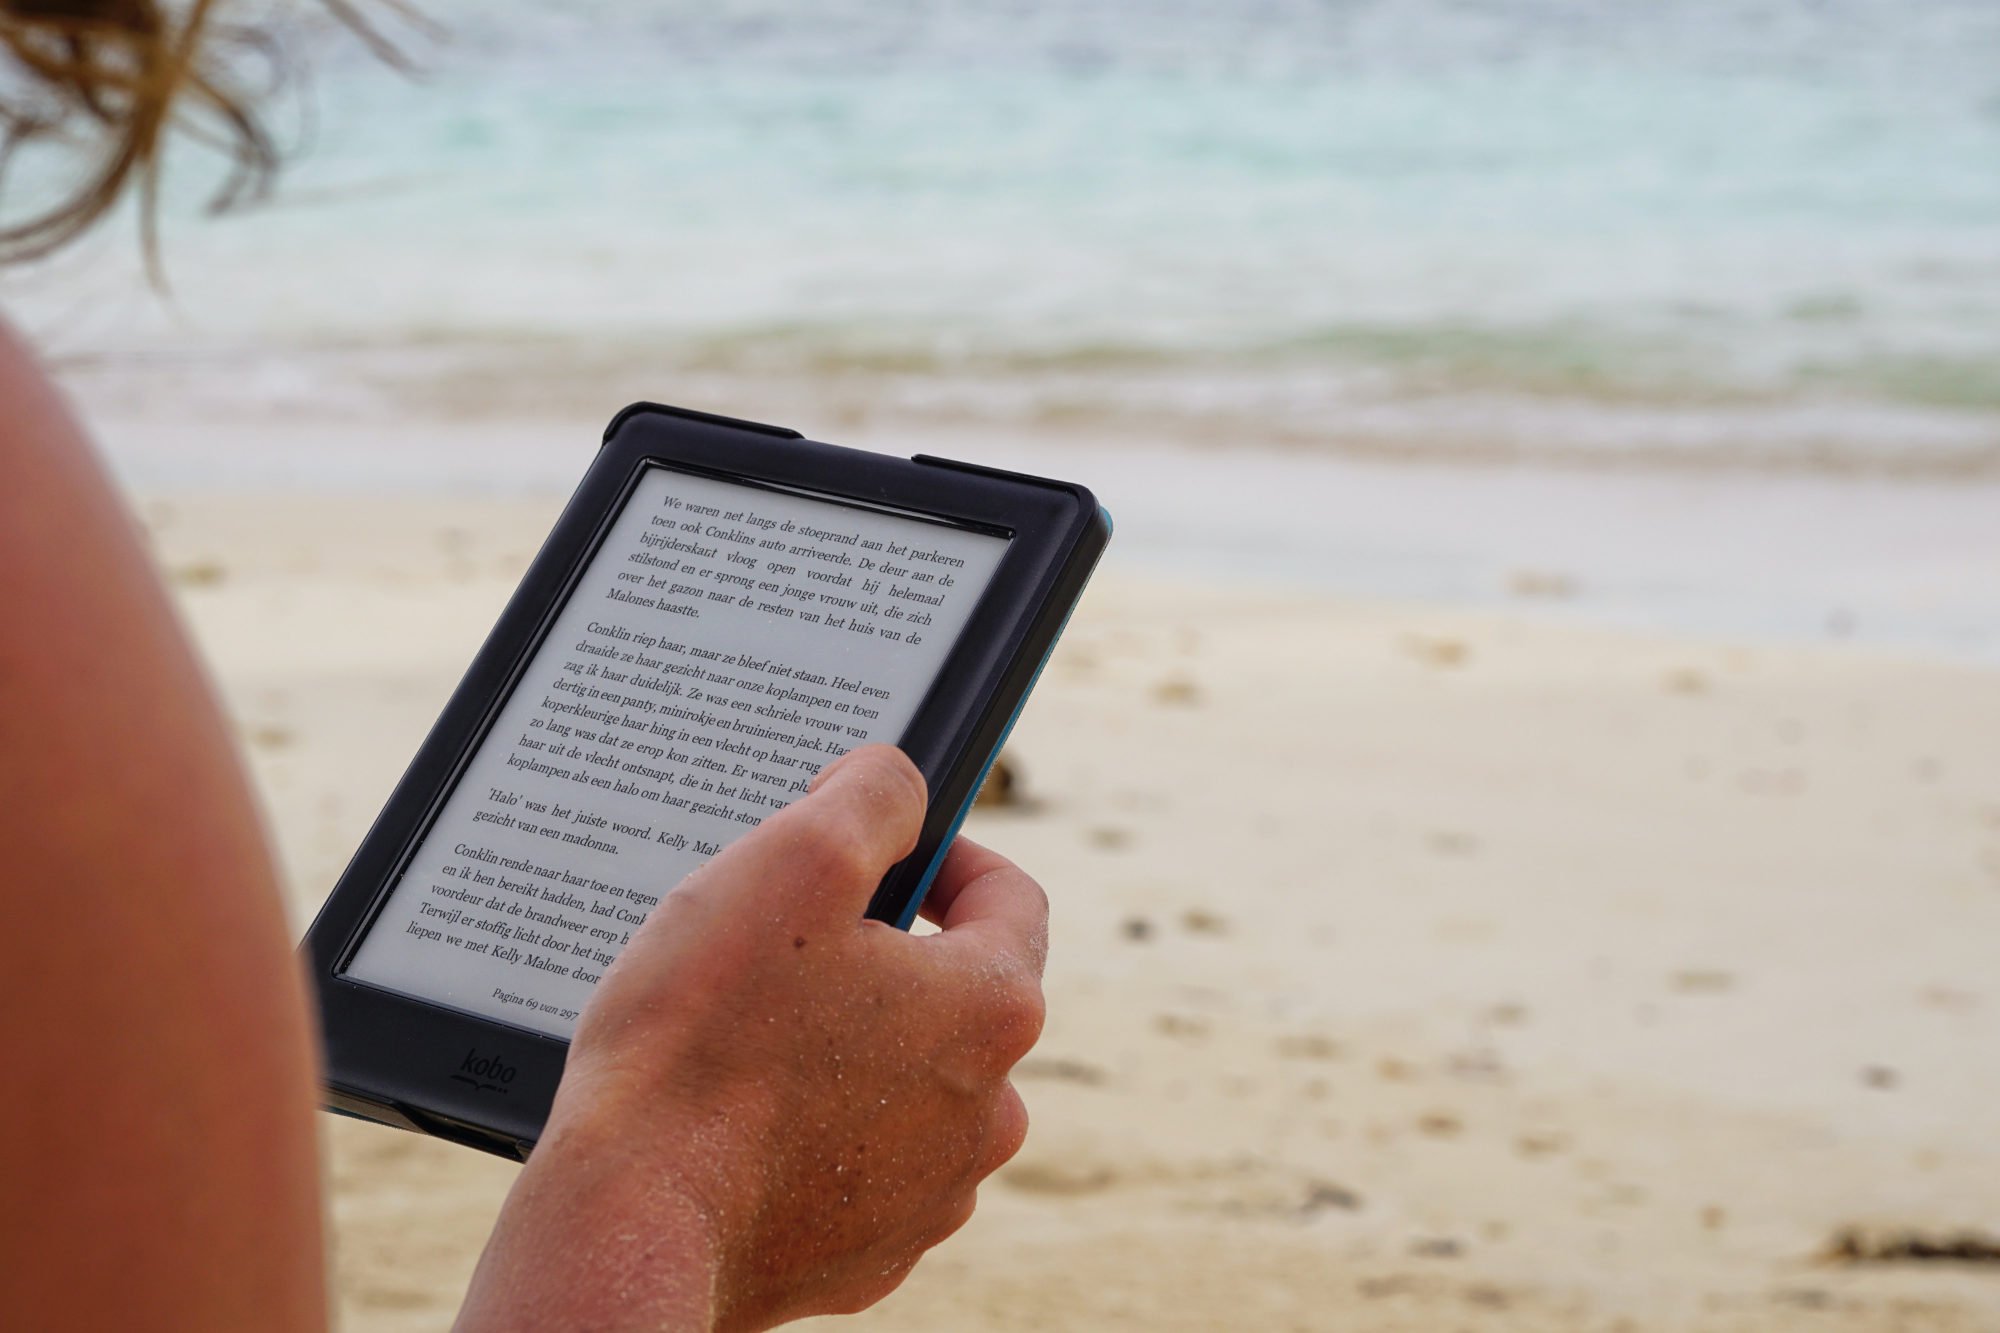 Les liseuses Kindle vont accepter le format ePub pour les livres